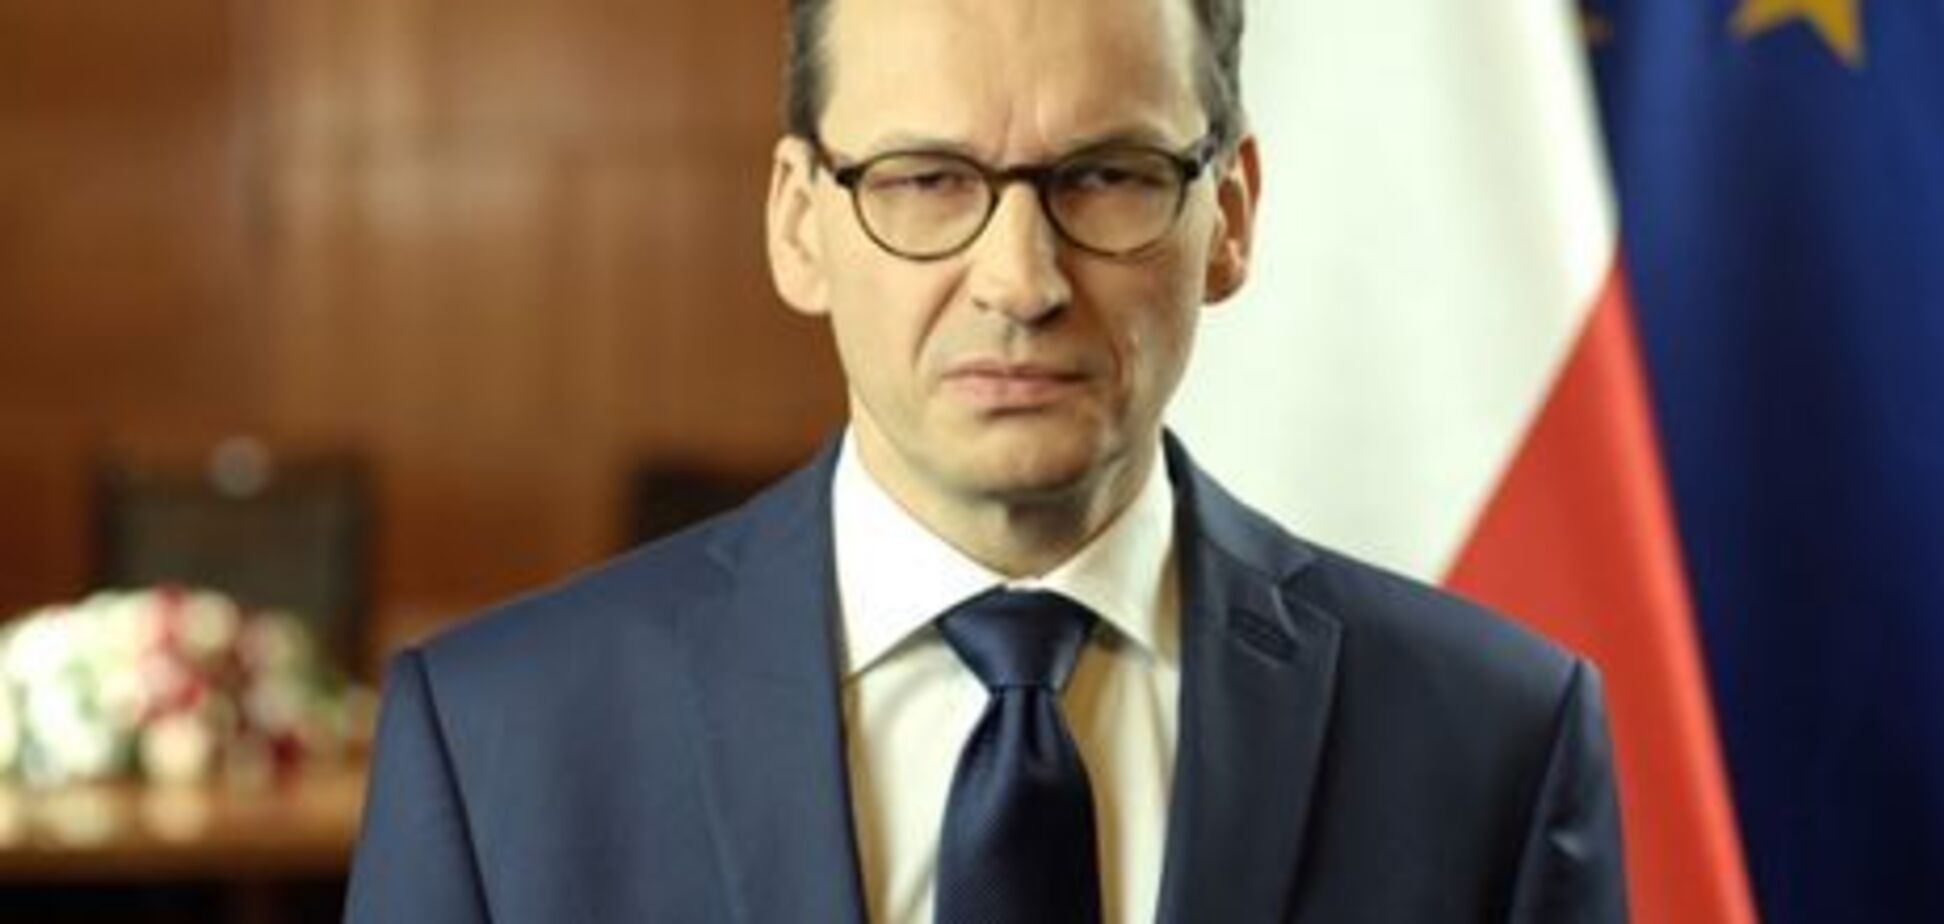 Прем'єр Польщі публічно зганьбився через незнання мови